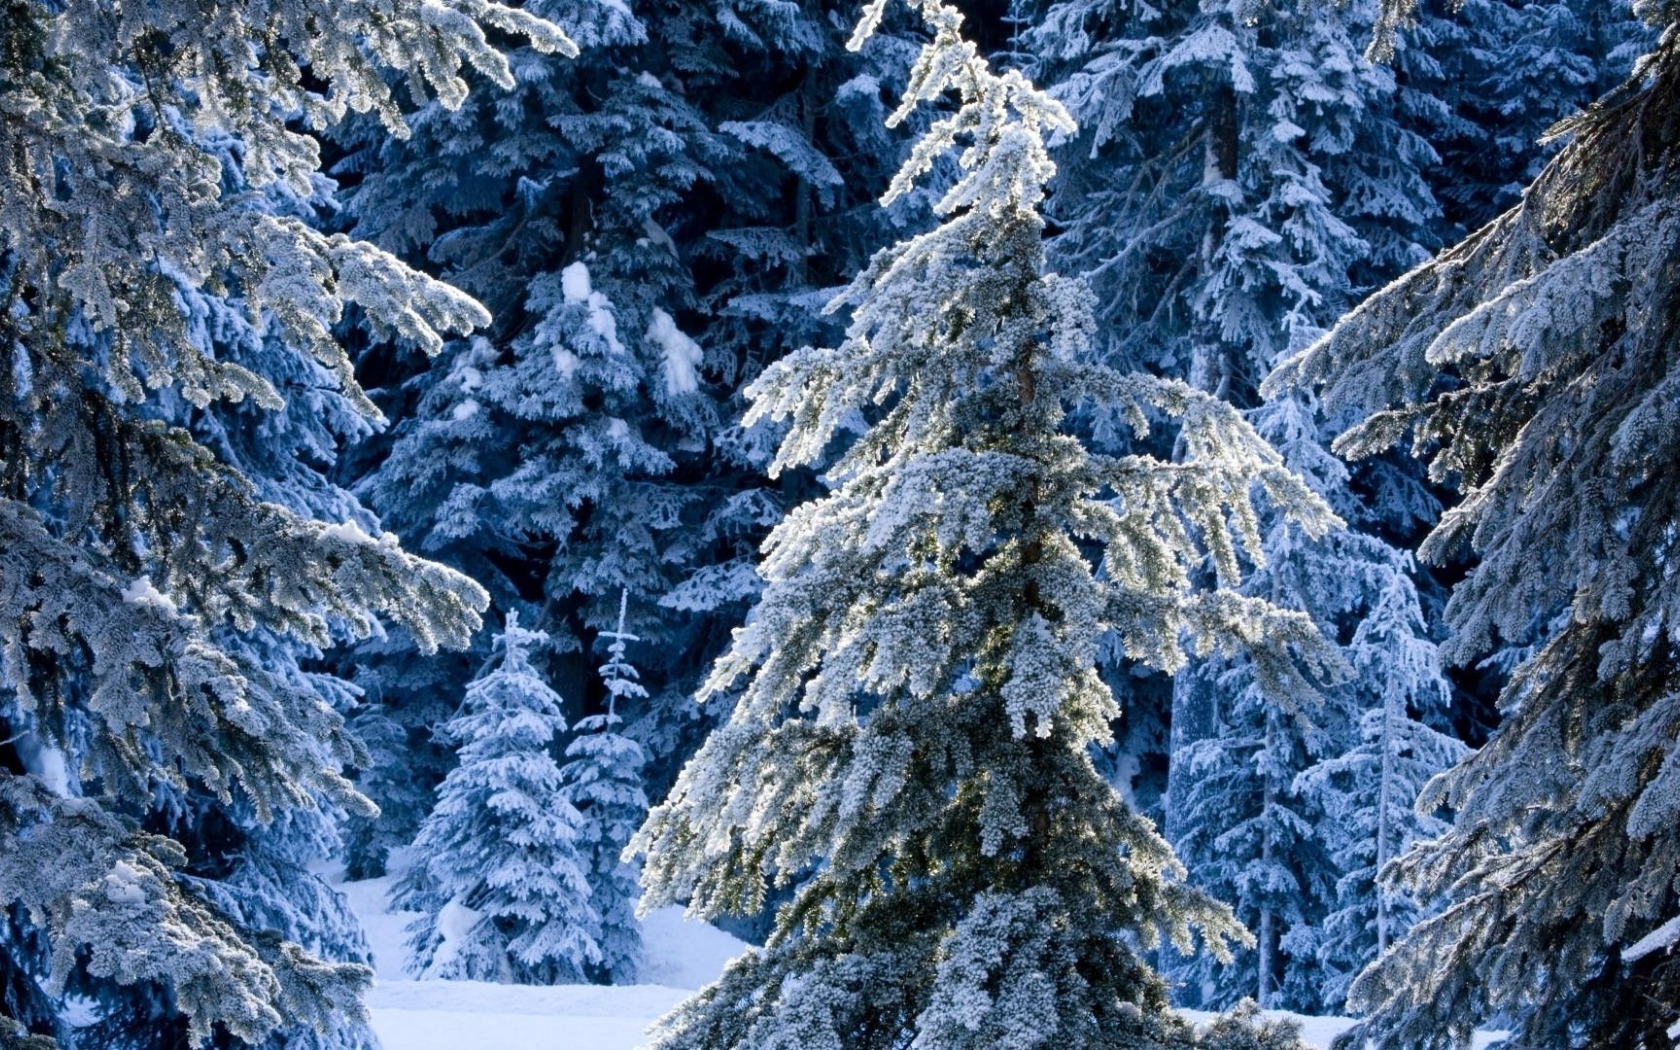 Winter forest. Сказочный зимний лес. Еловый лес зимой. Заснеженный сказочный лес. Волшебный зимний лес.